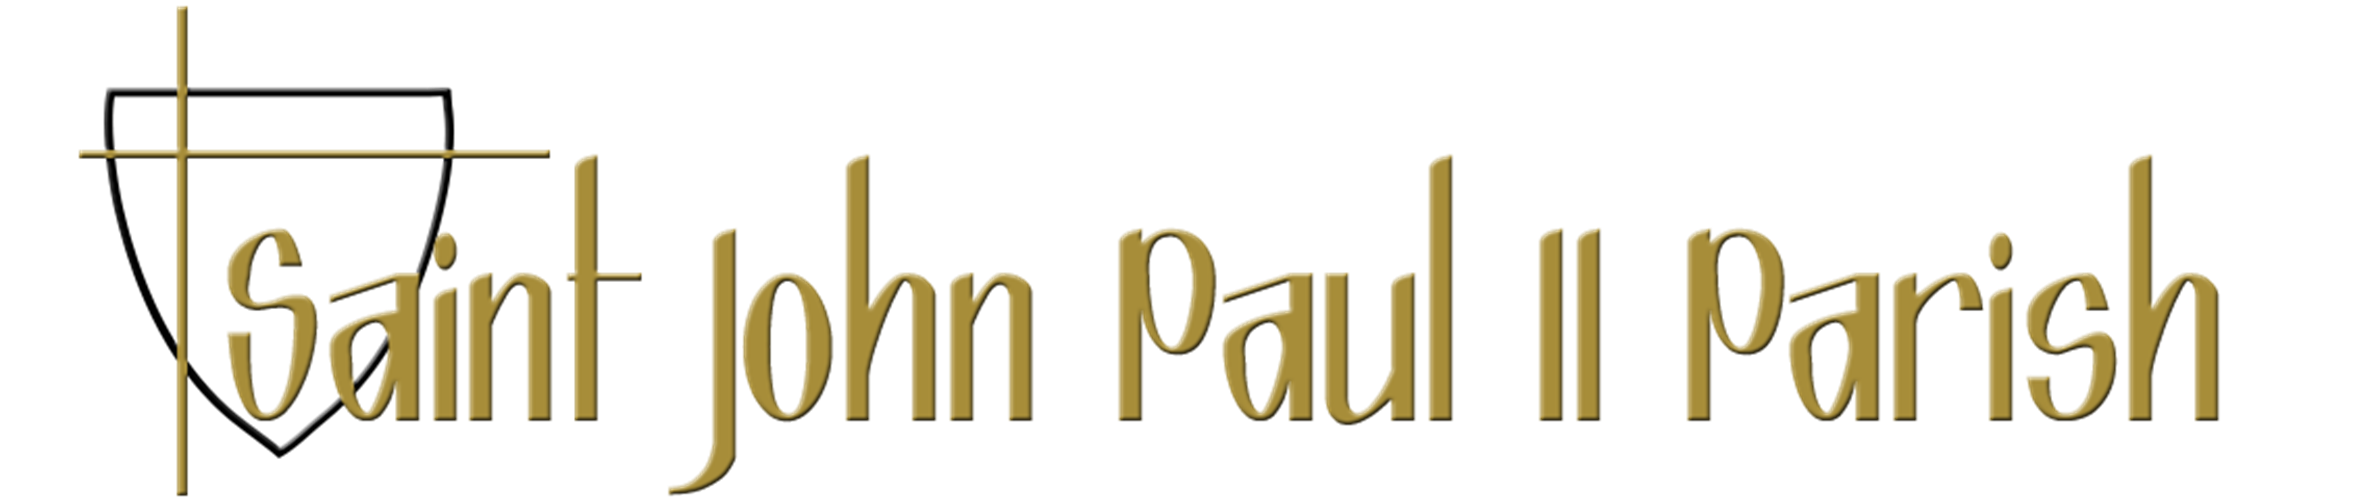 logo for St. John Paul II Parish of Carrollton